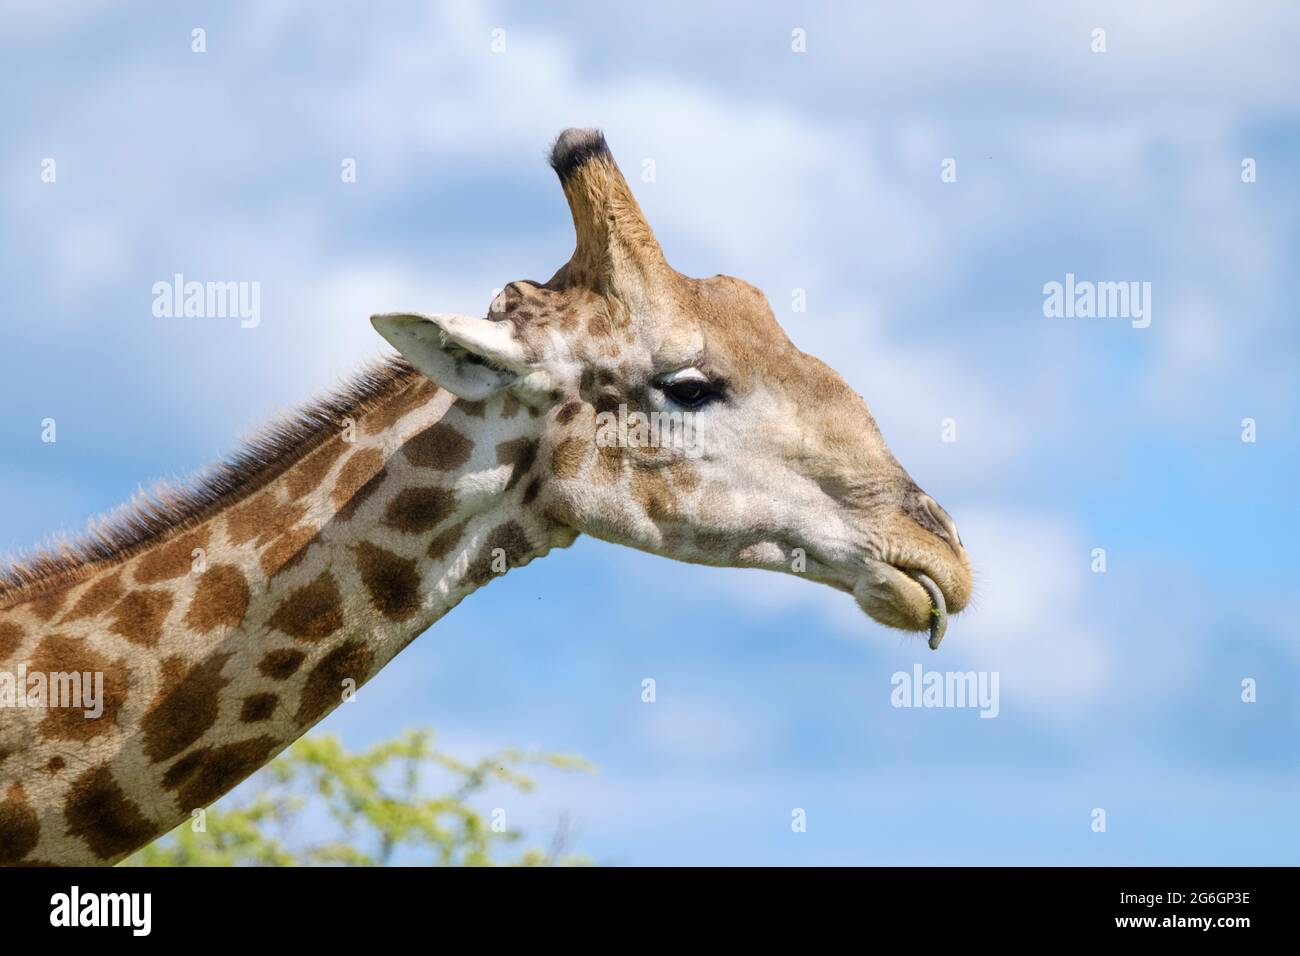 Portrait de girafe, Giraffa camelopardalis, tête. Parc national d'Etosha, Namibie, Afrique Banque D'Images